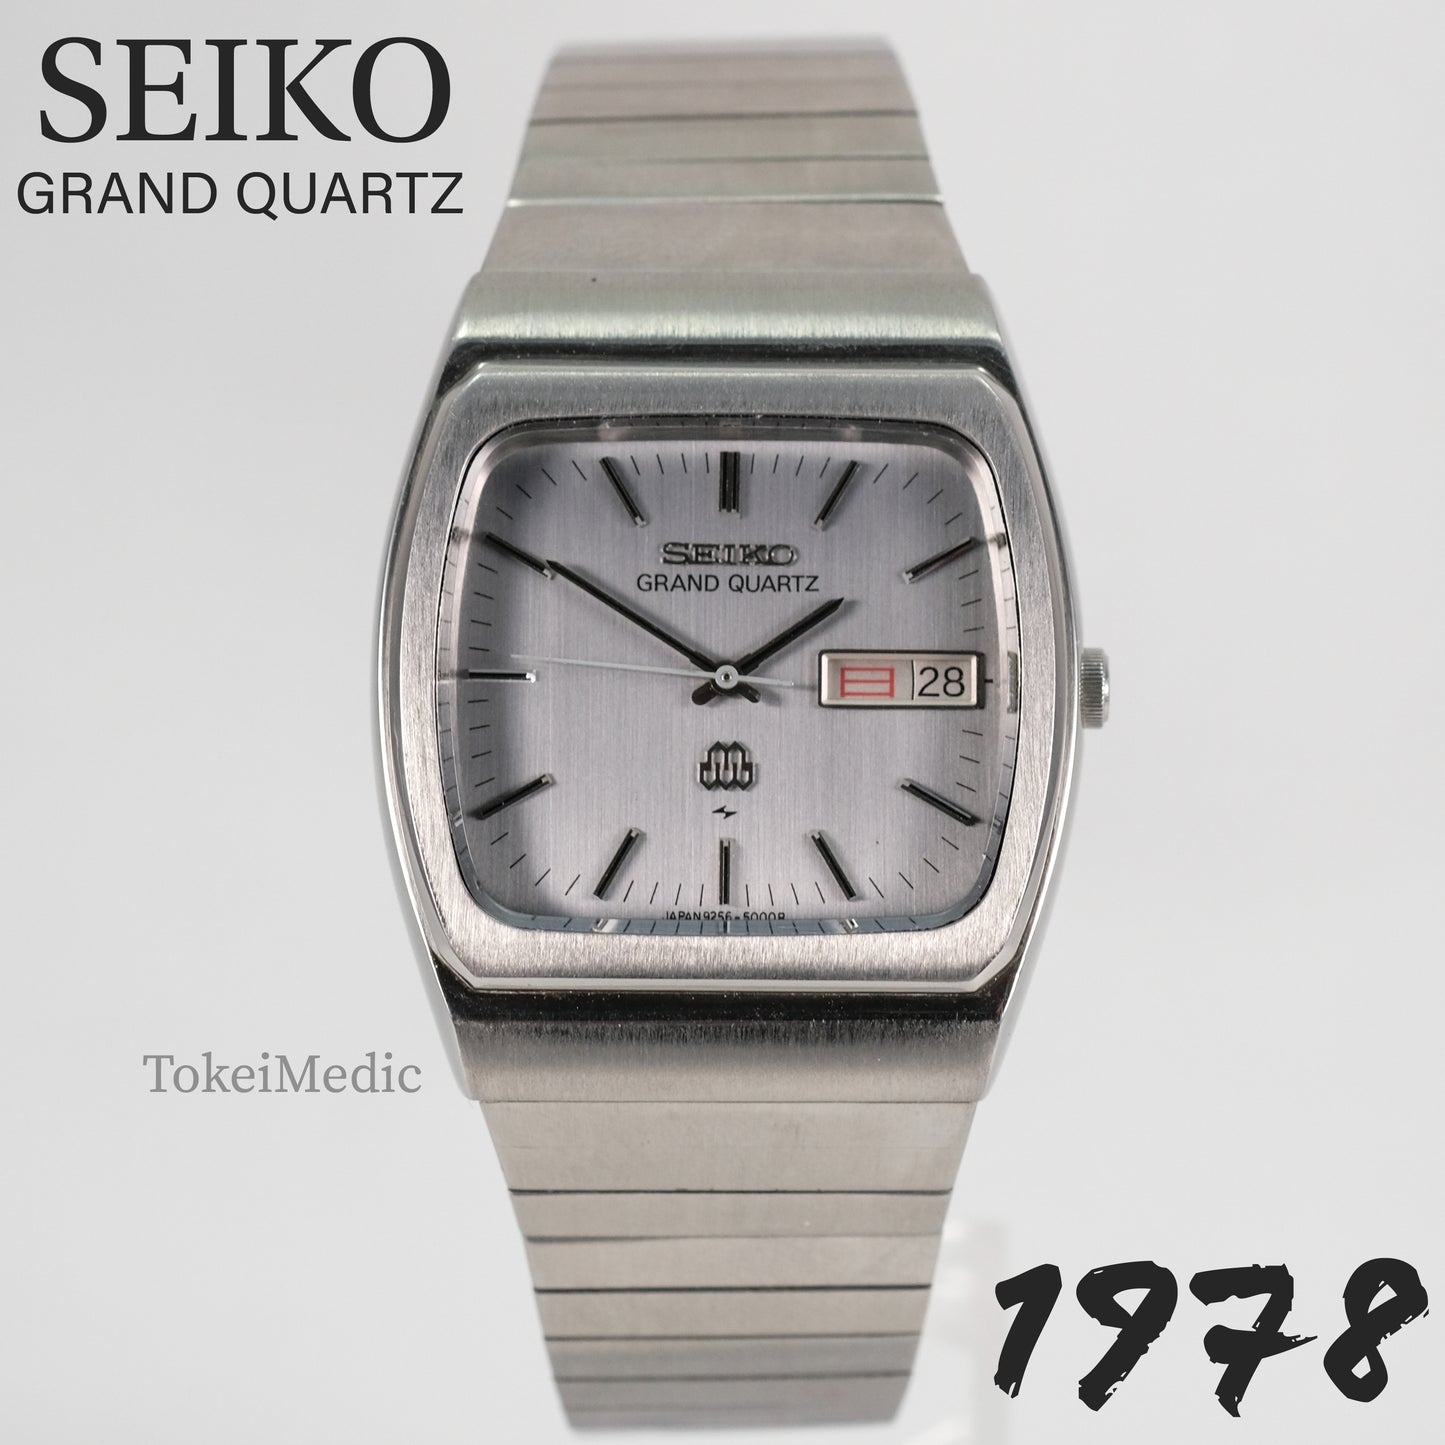 1978 Seiko Grand Quartz 9256-5000